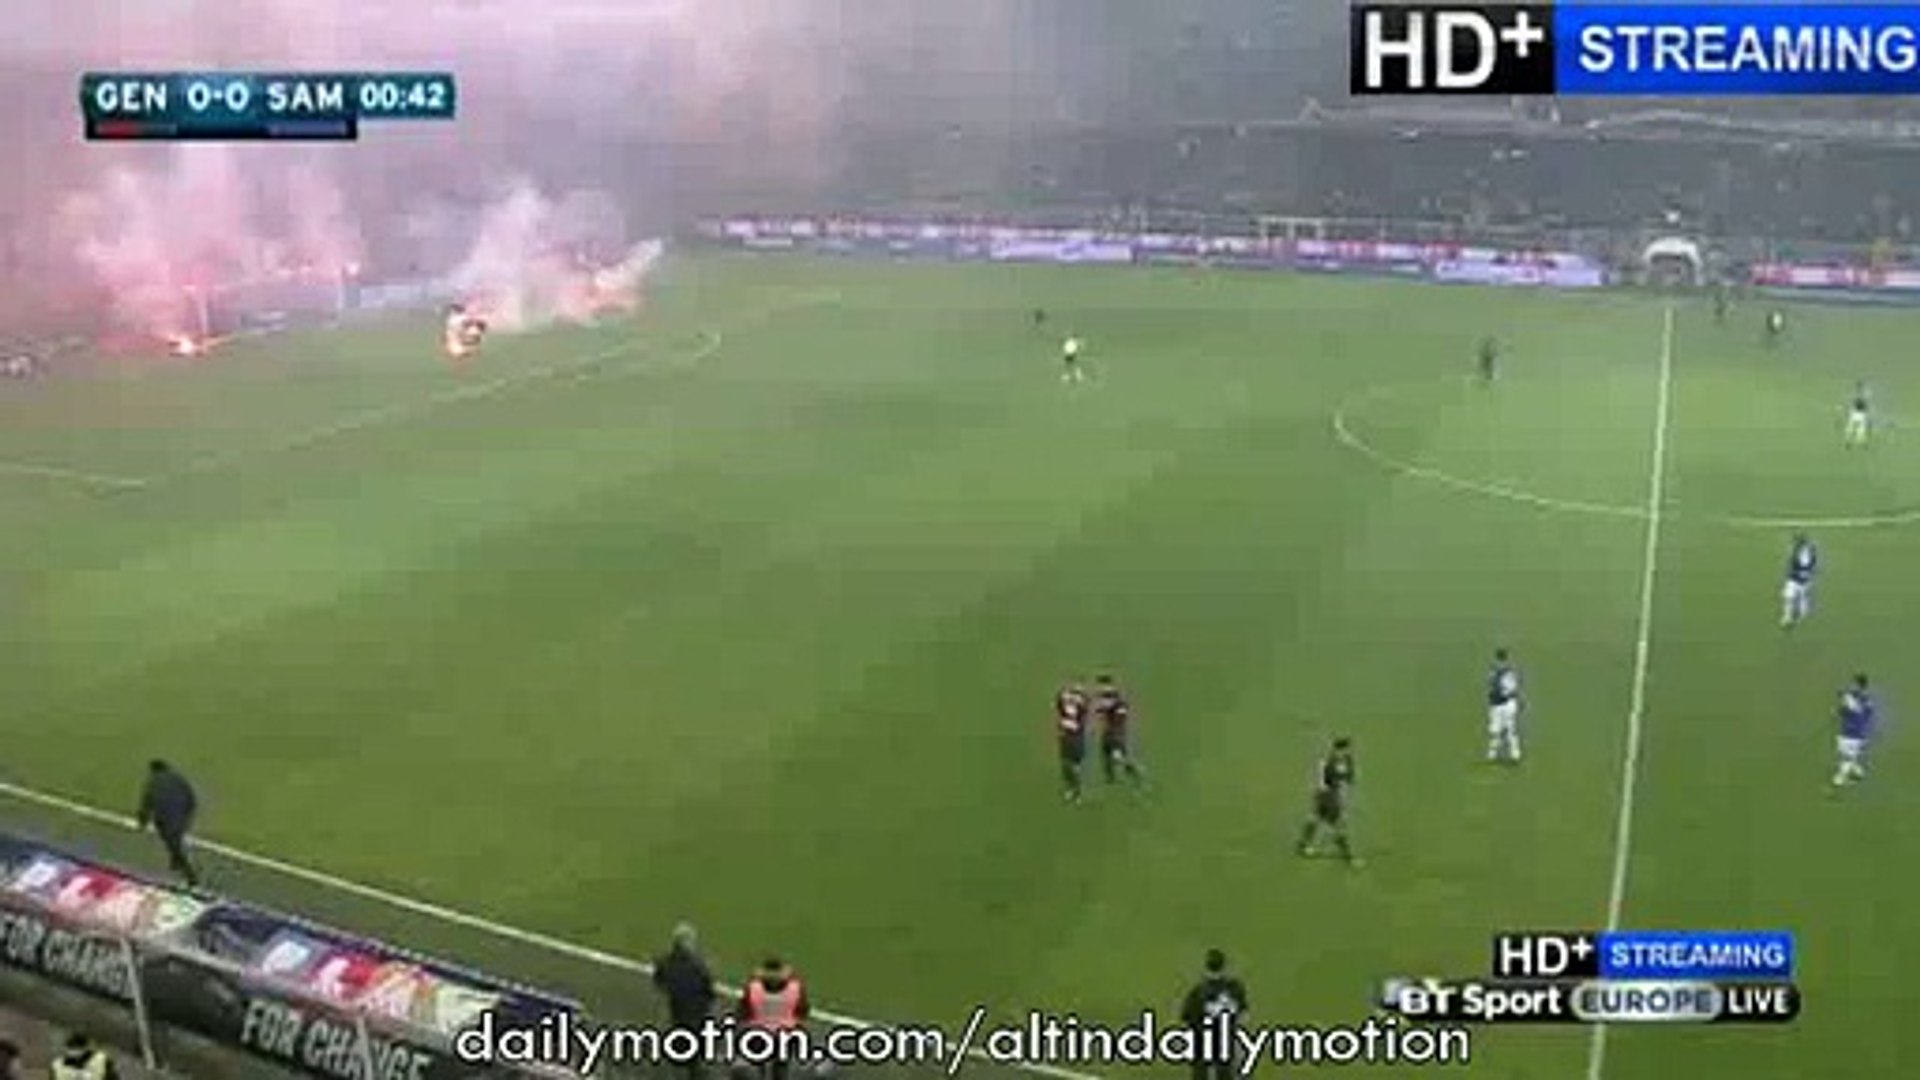 Sampdoria fans set off fireworks in huge celebrations after